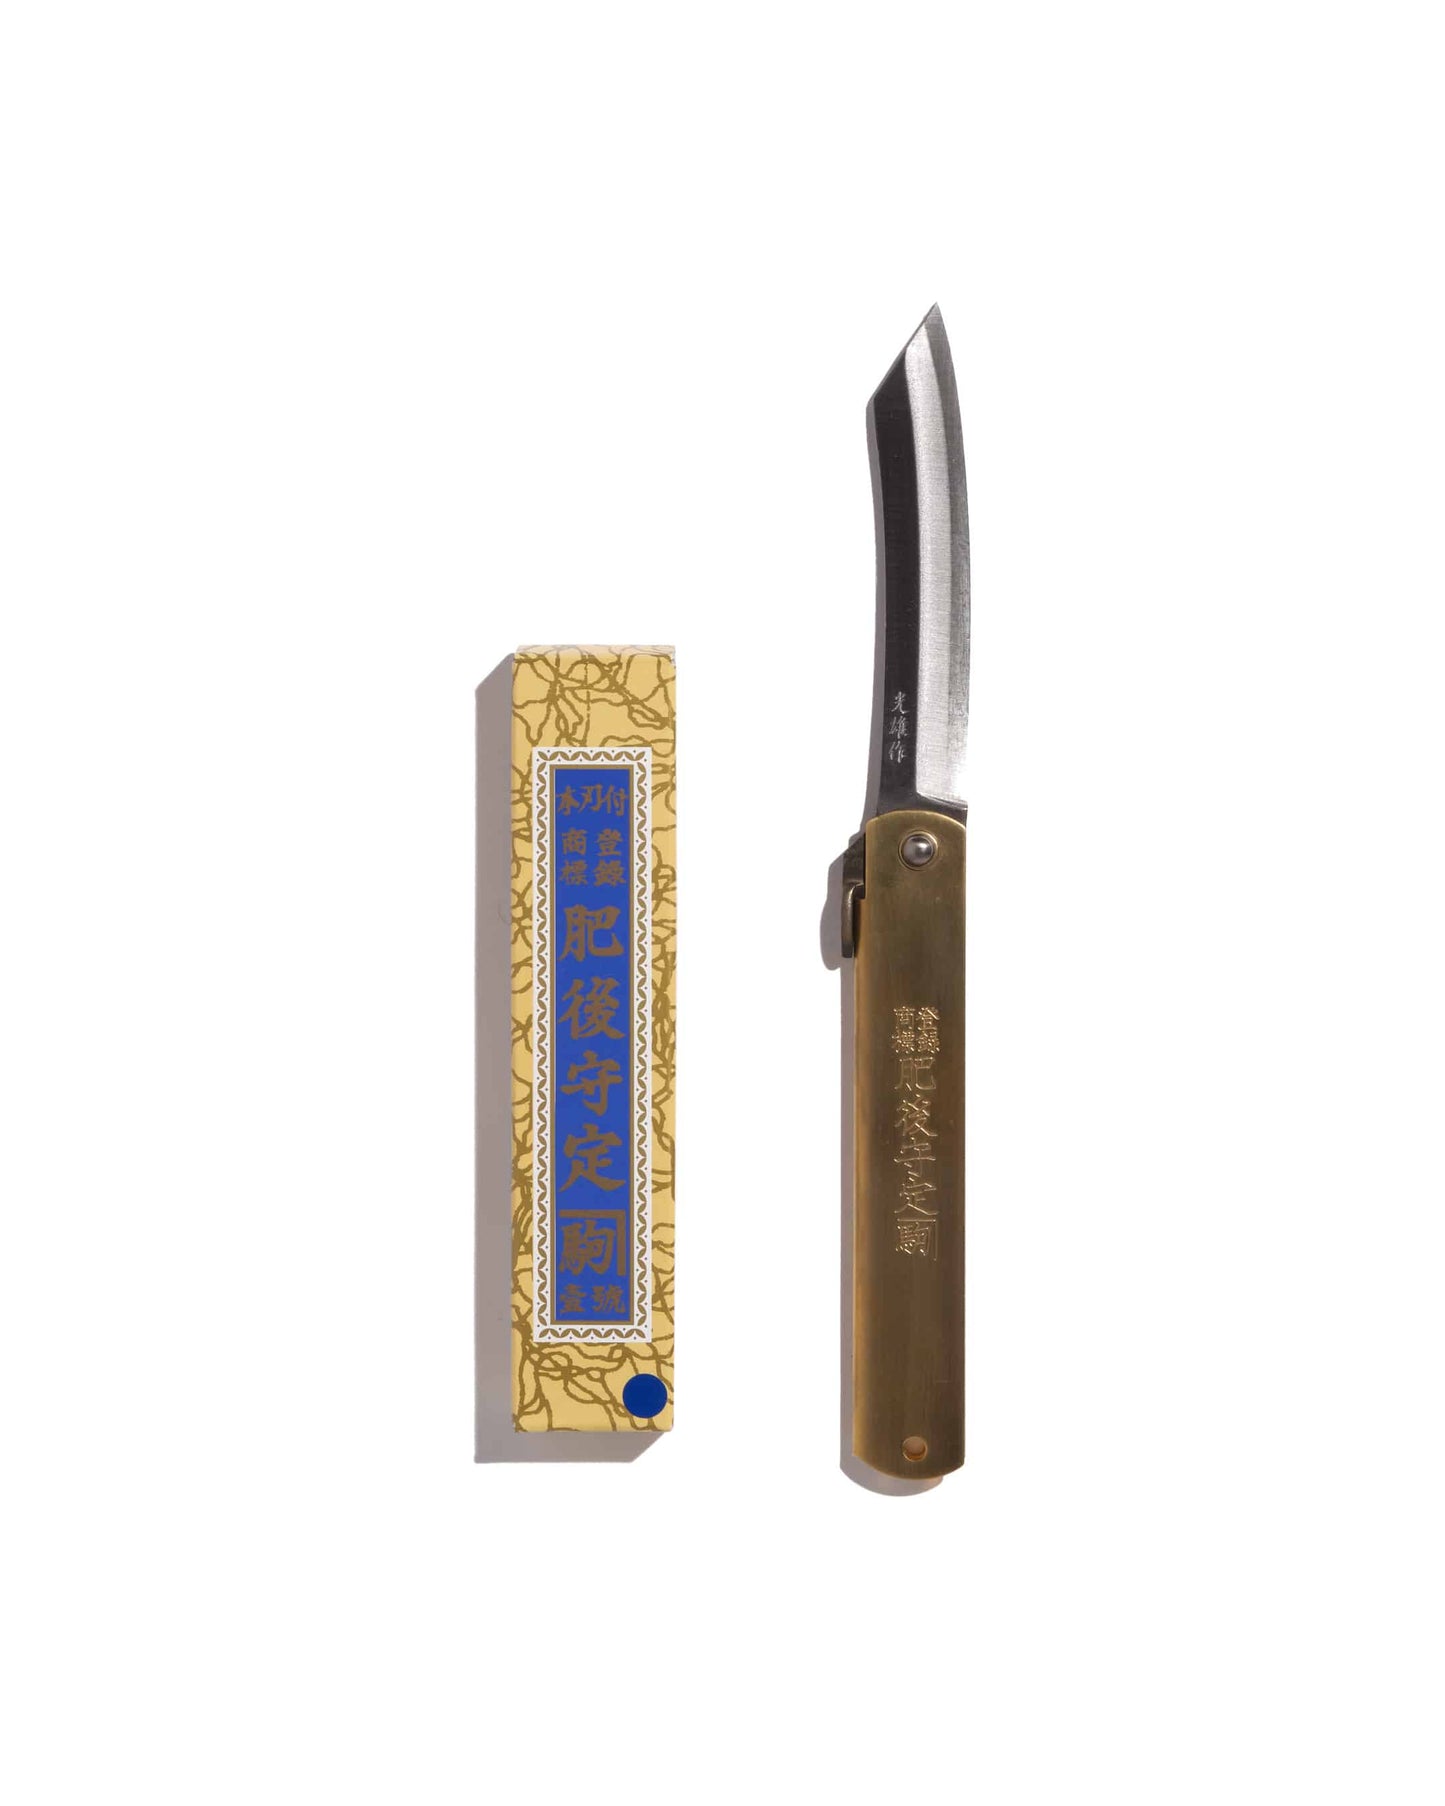 Higonokami brass 12 cm